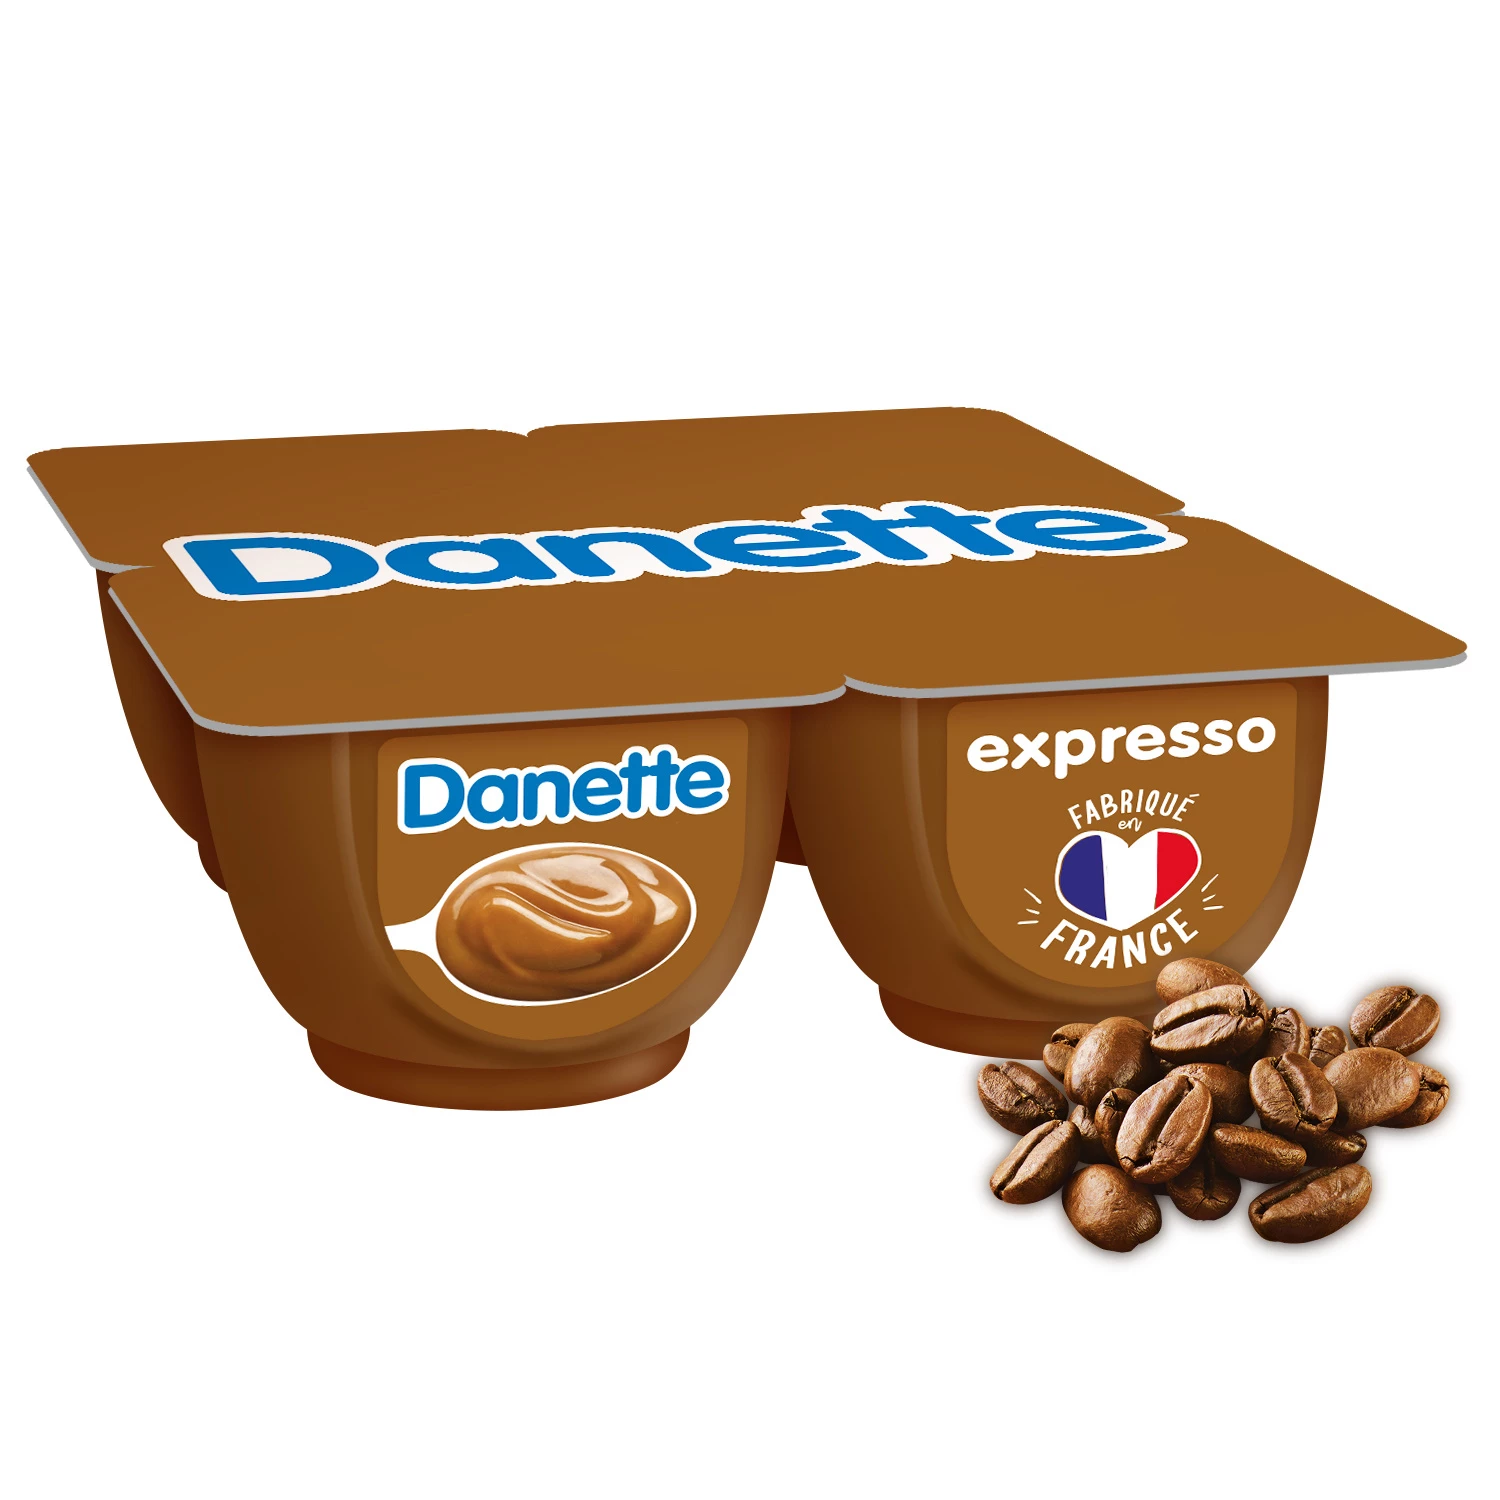 Danette Espresso 4x125g